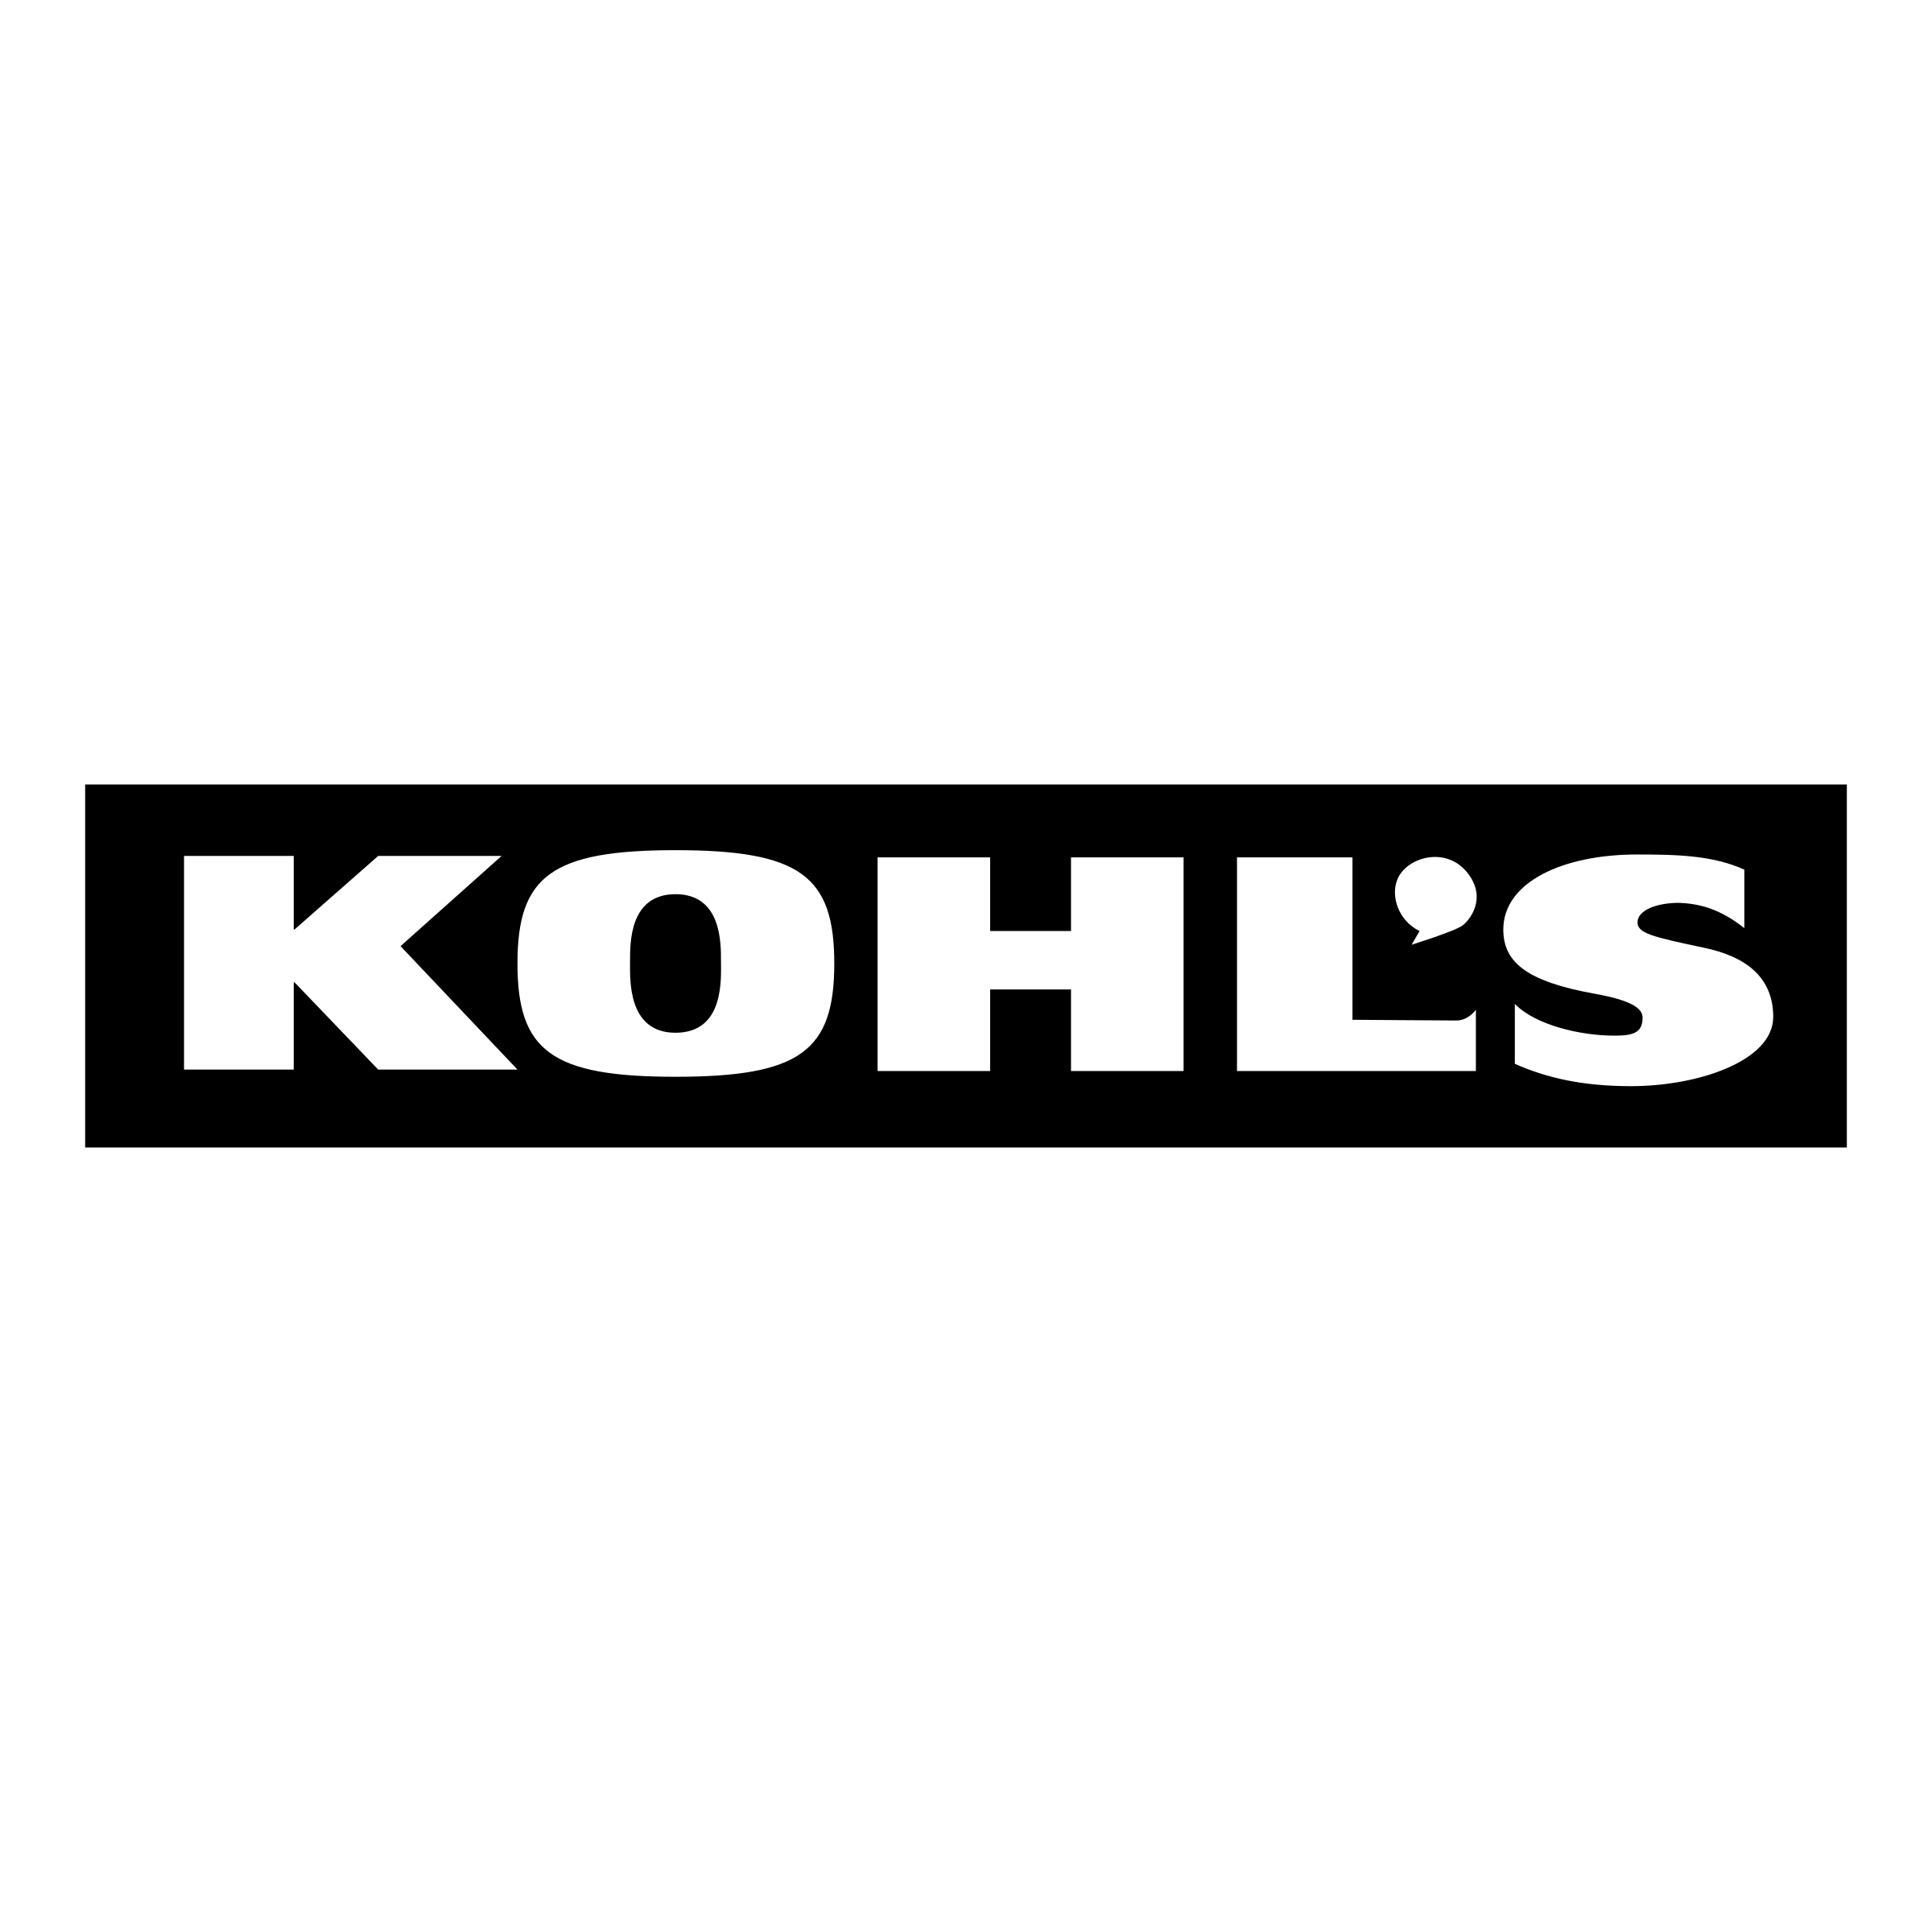 kohls-1-logo-png-transparent.png